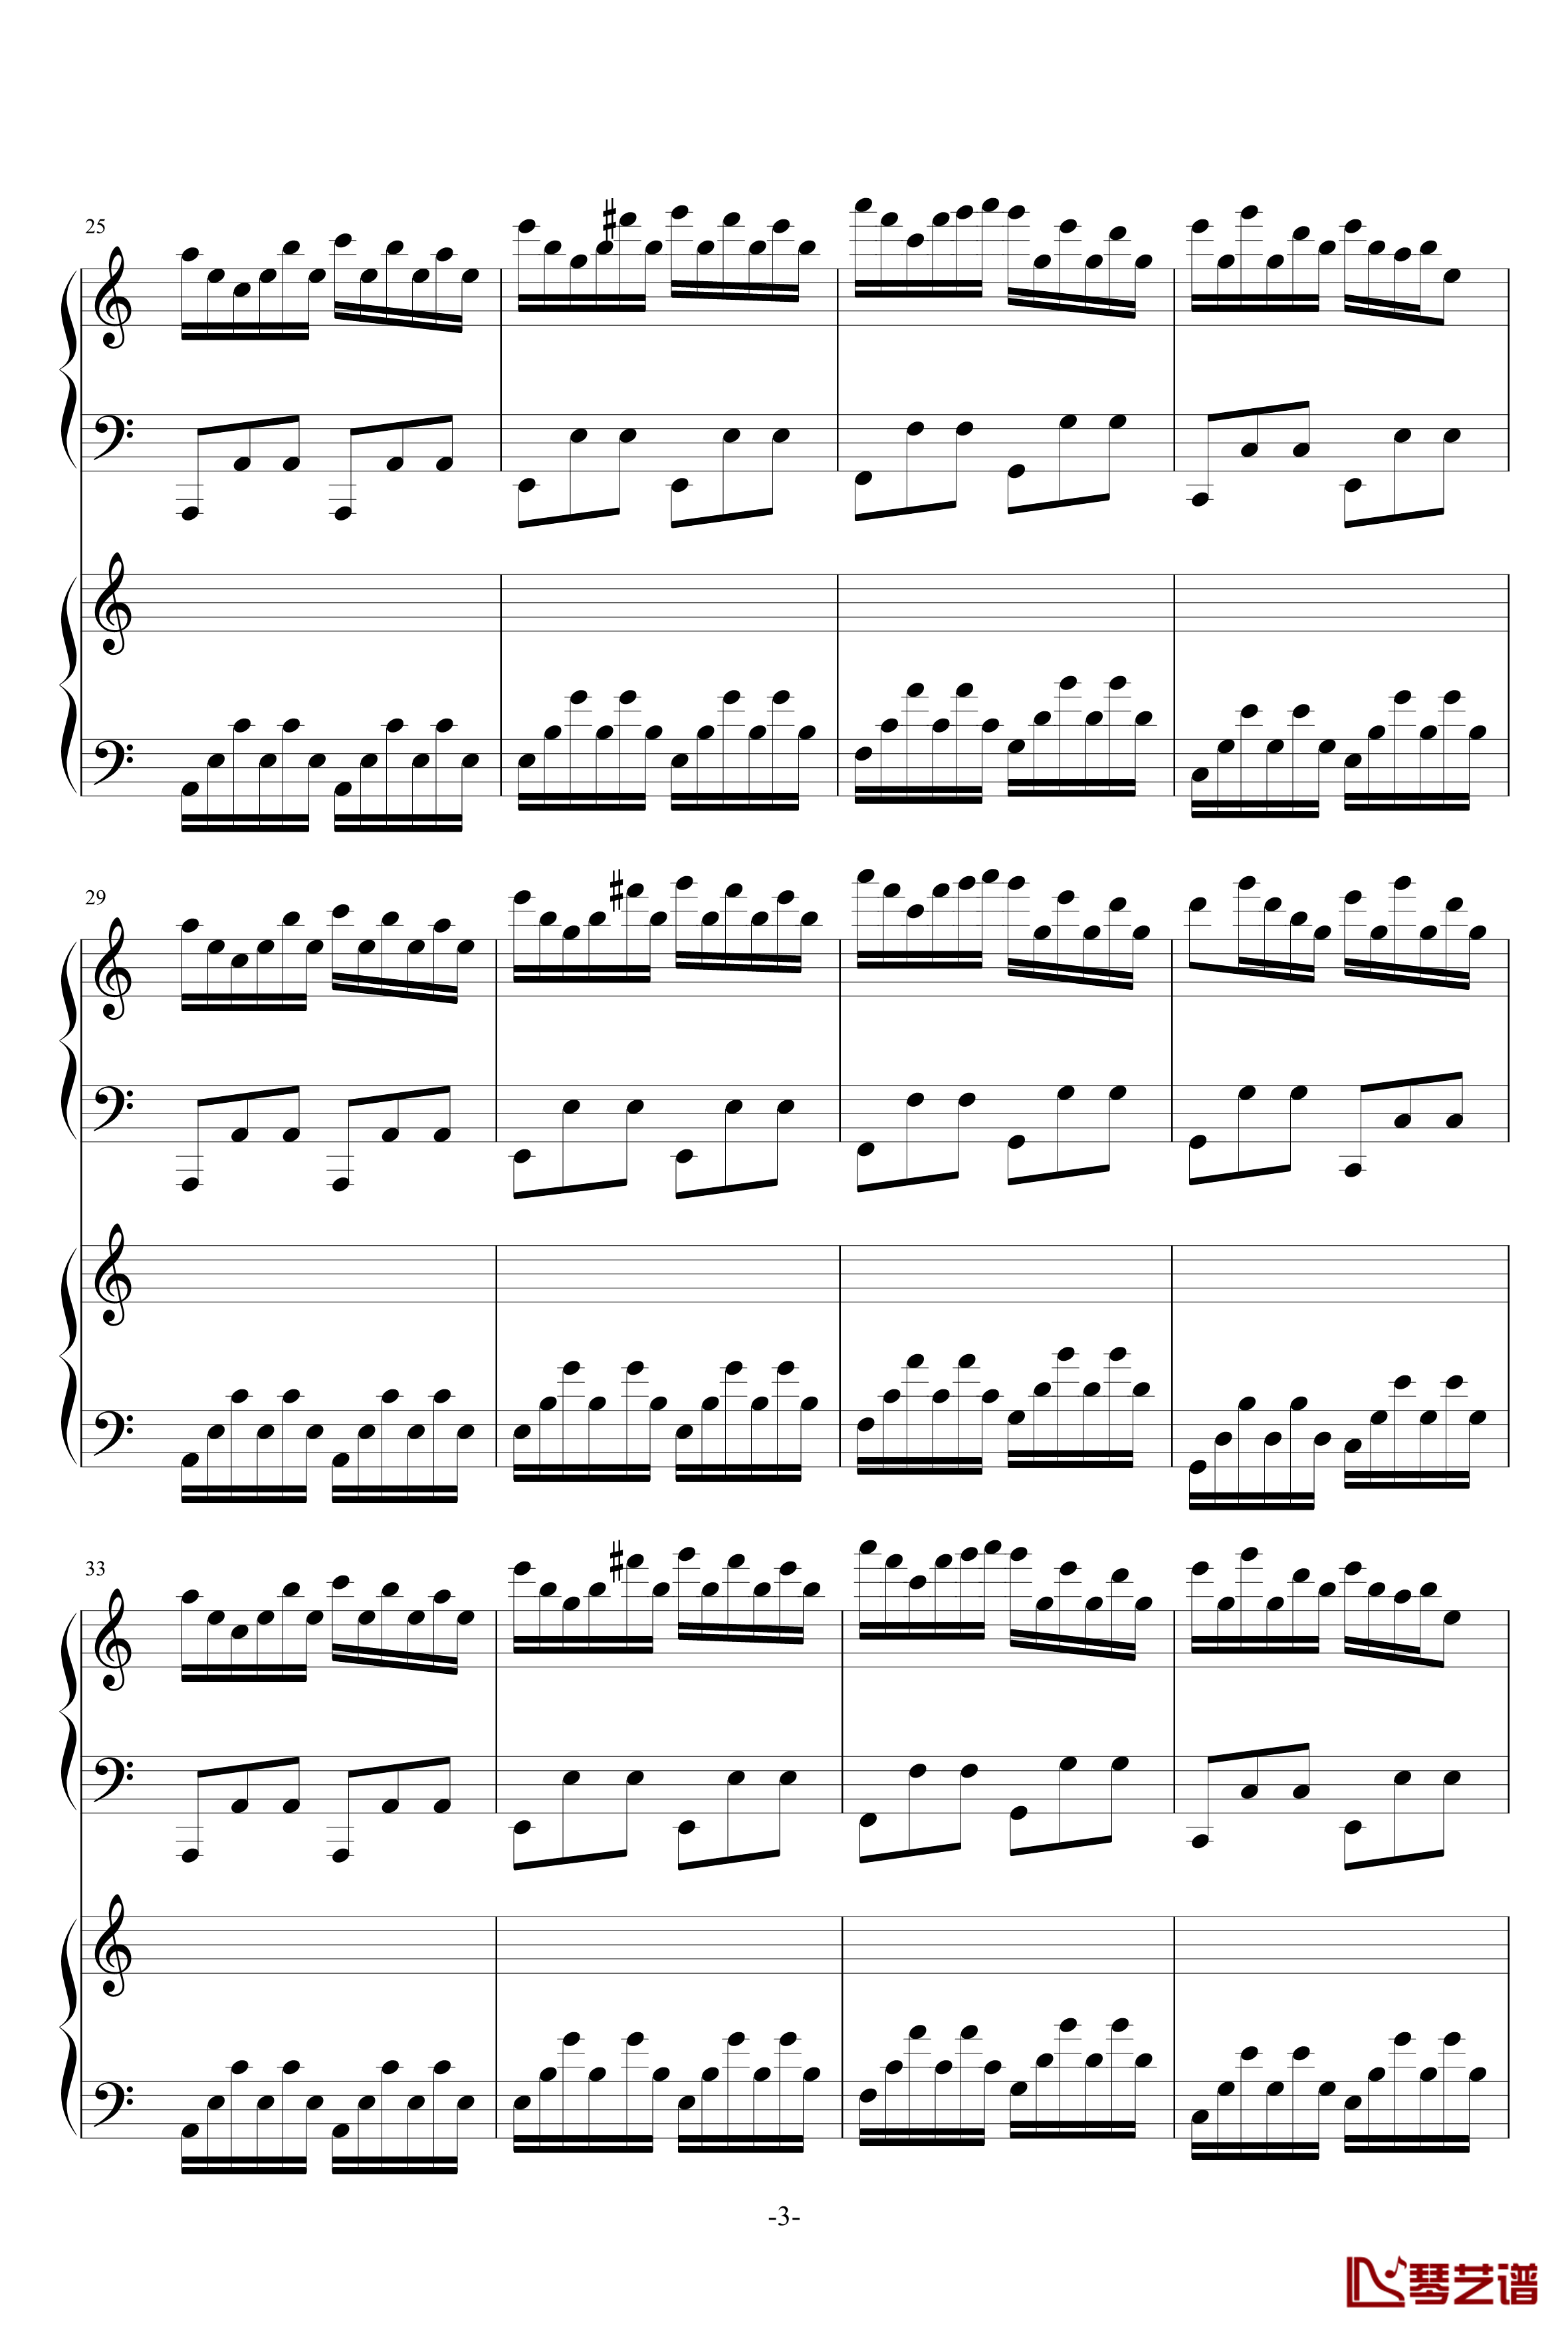 极品钢琴高手练习曲3钢琴谱-as21343